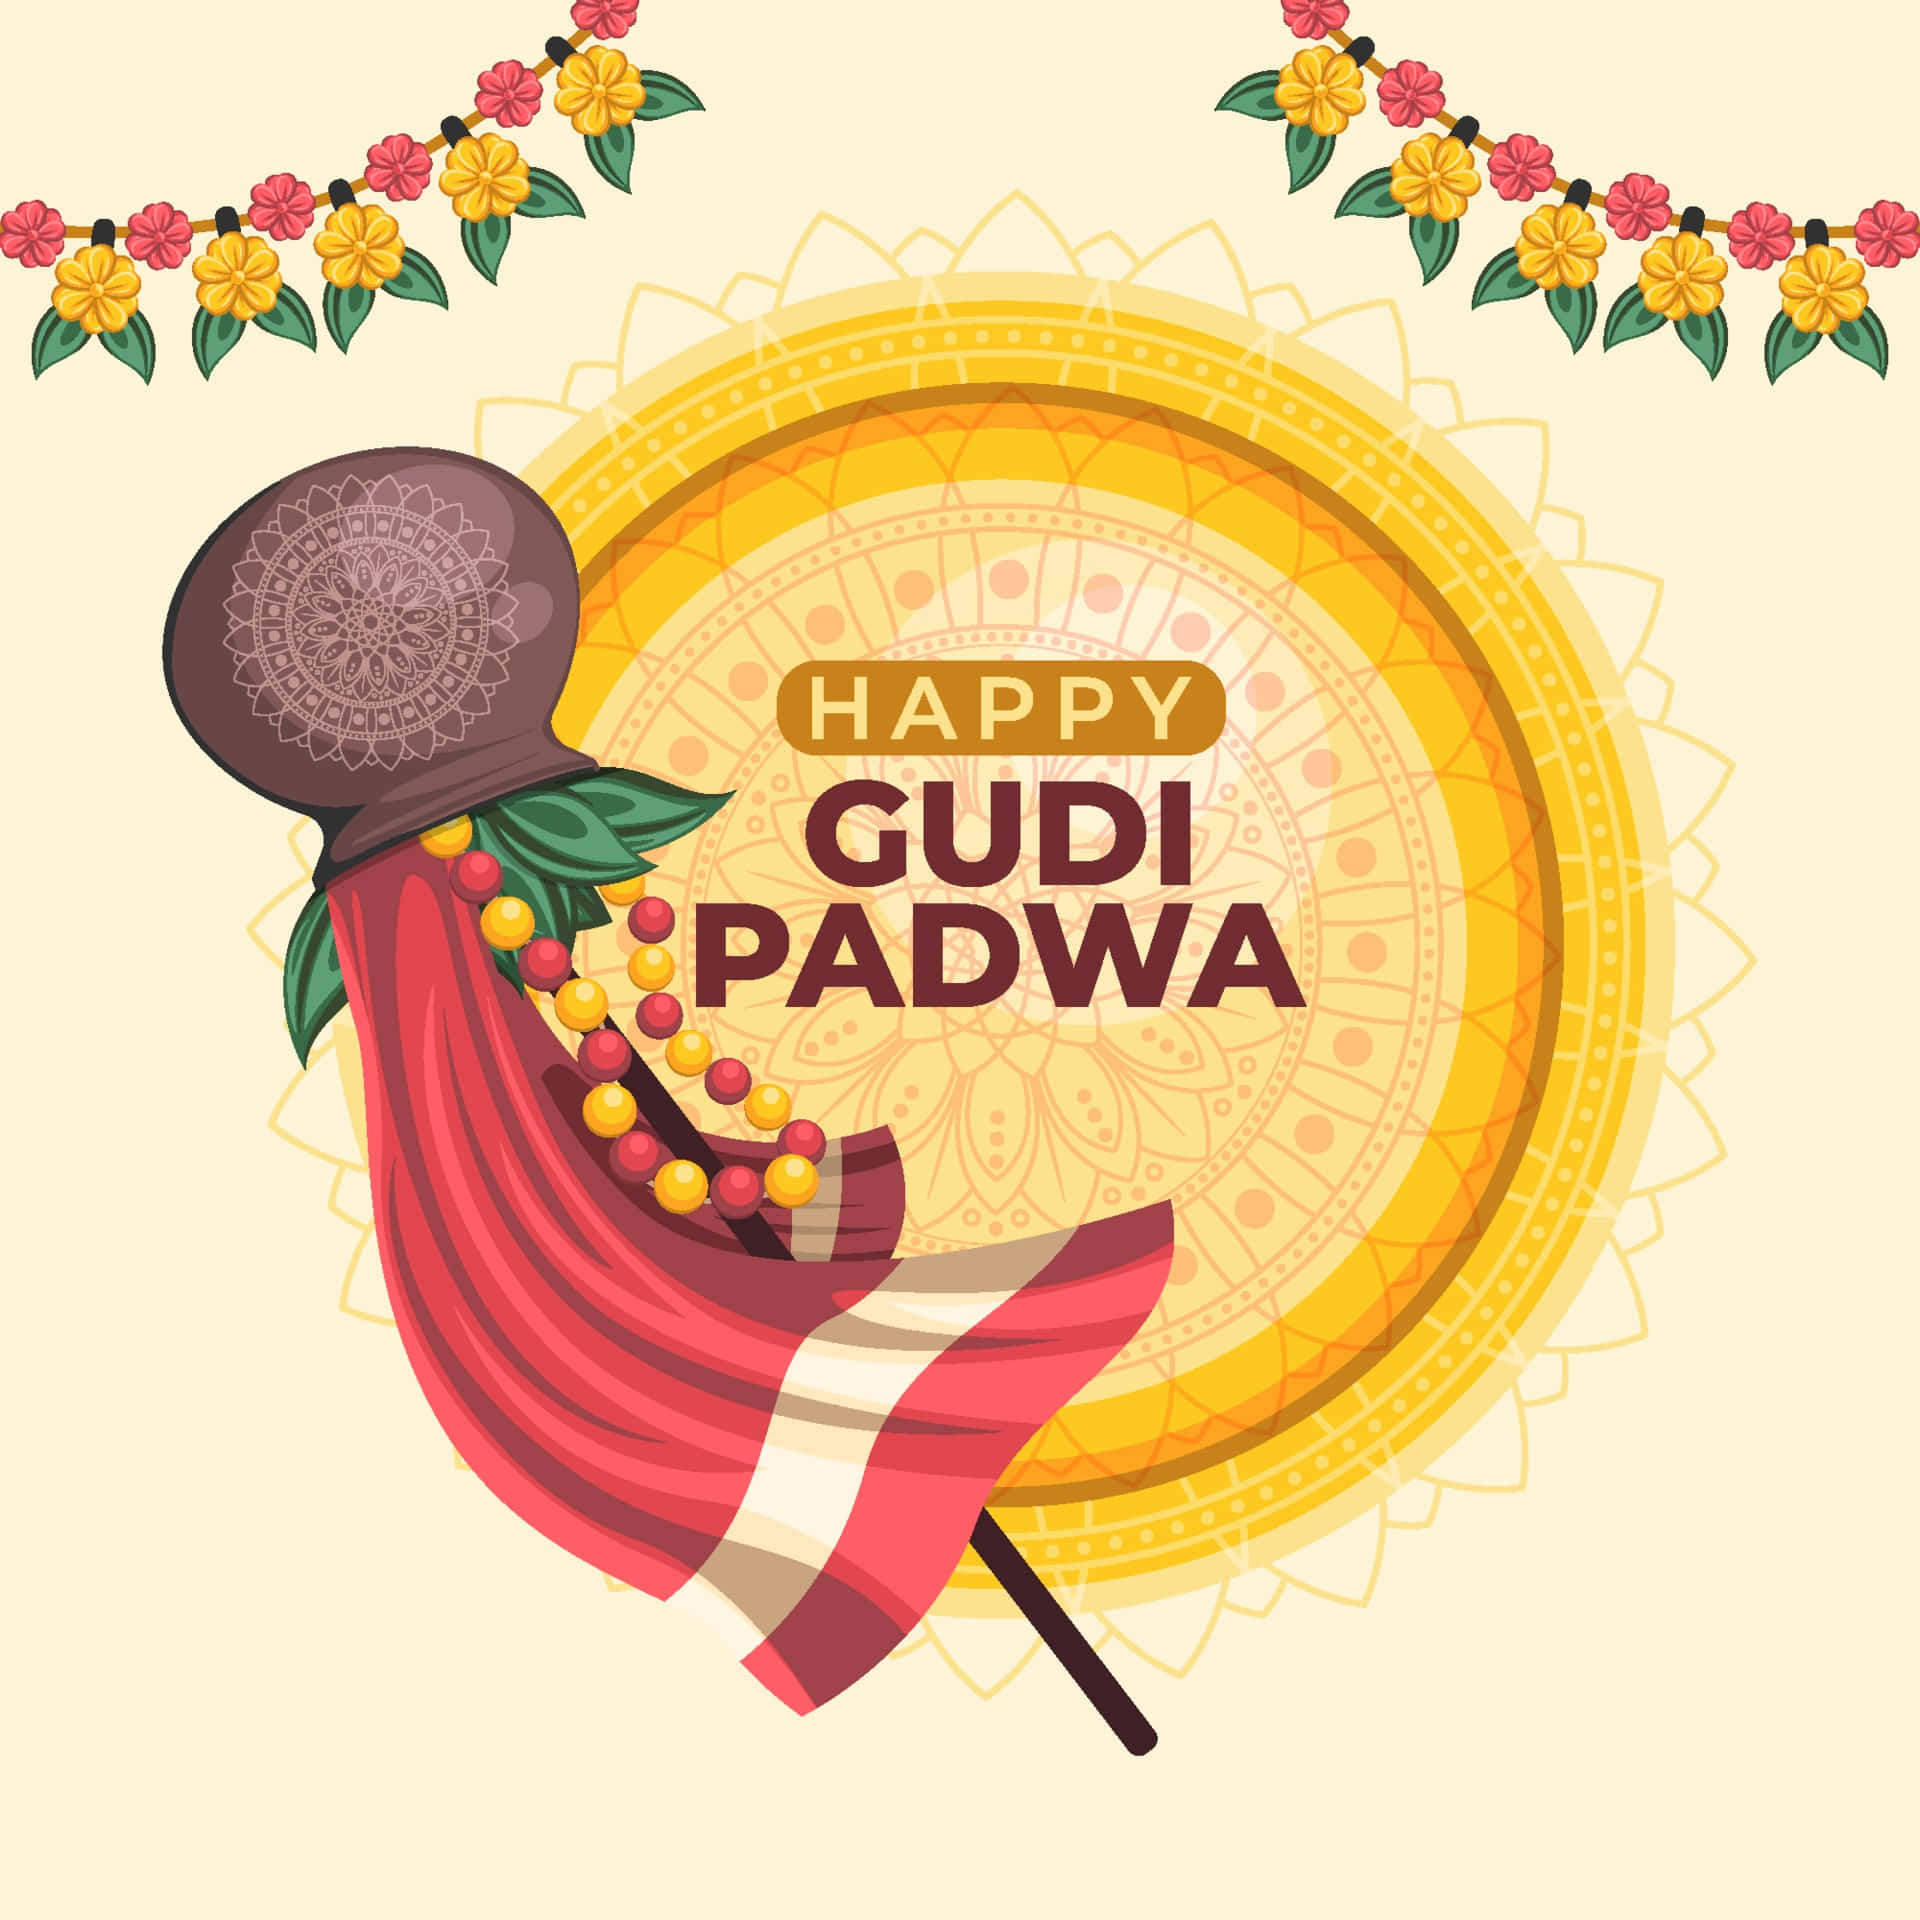 Celebrate Gudi Padwa